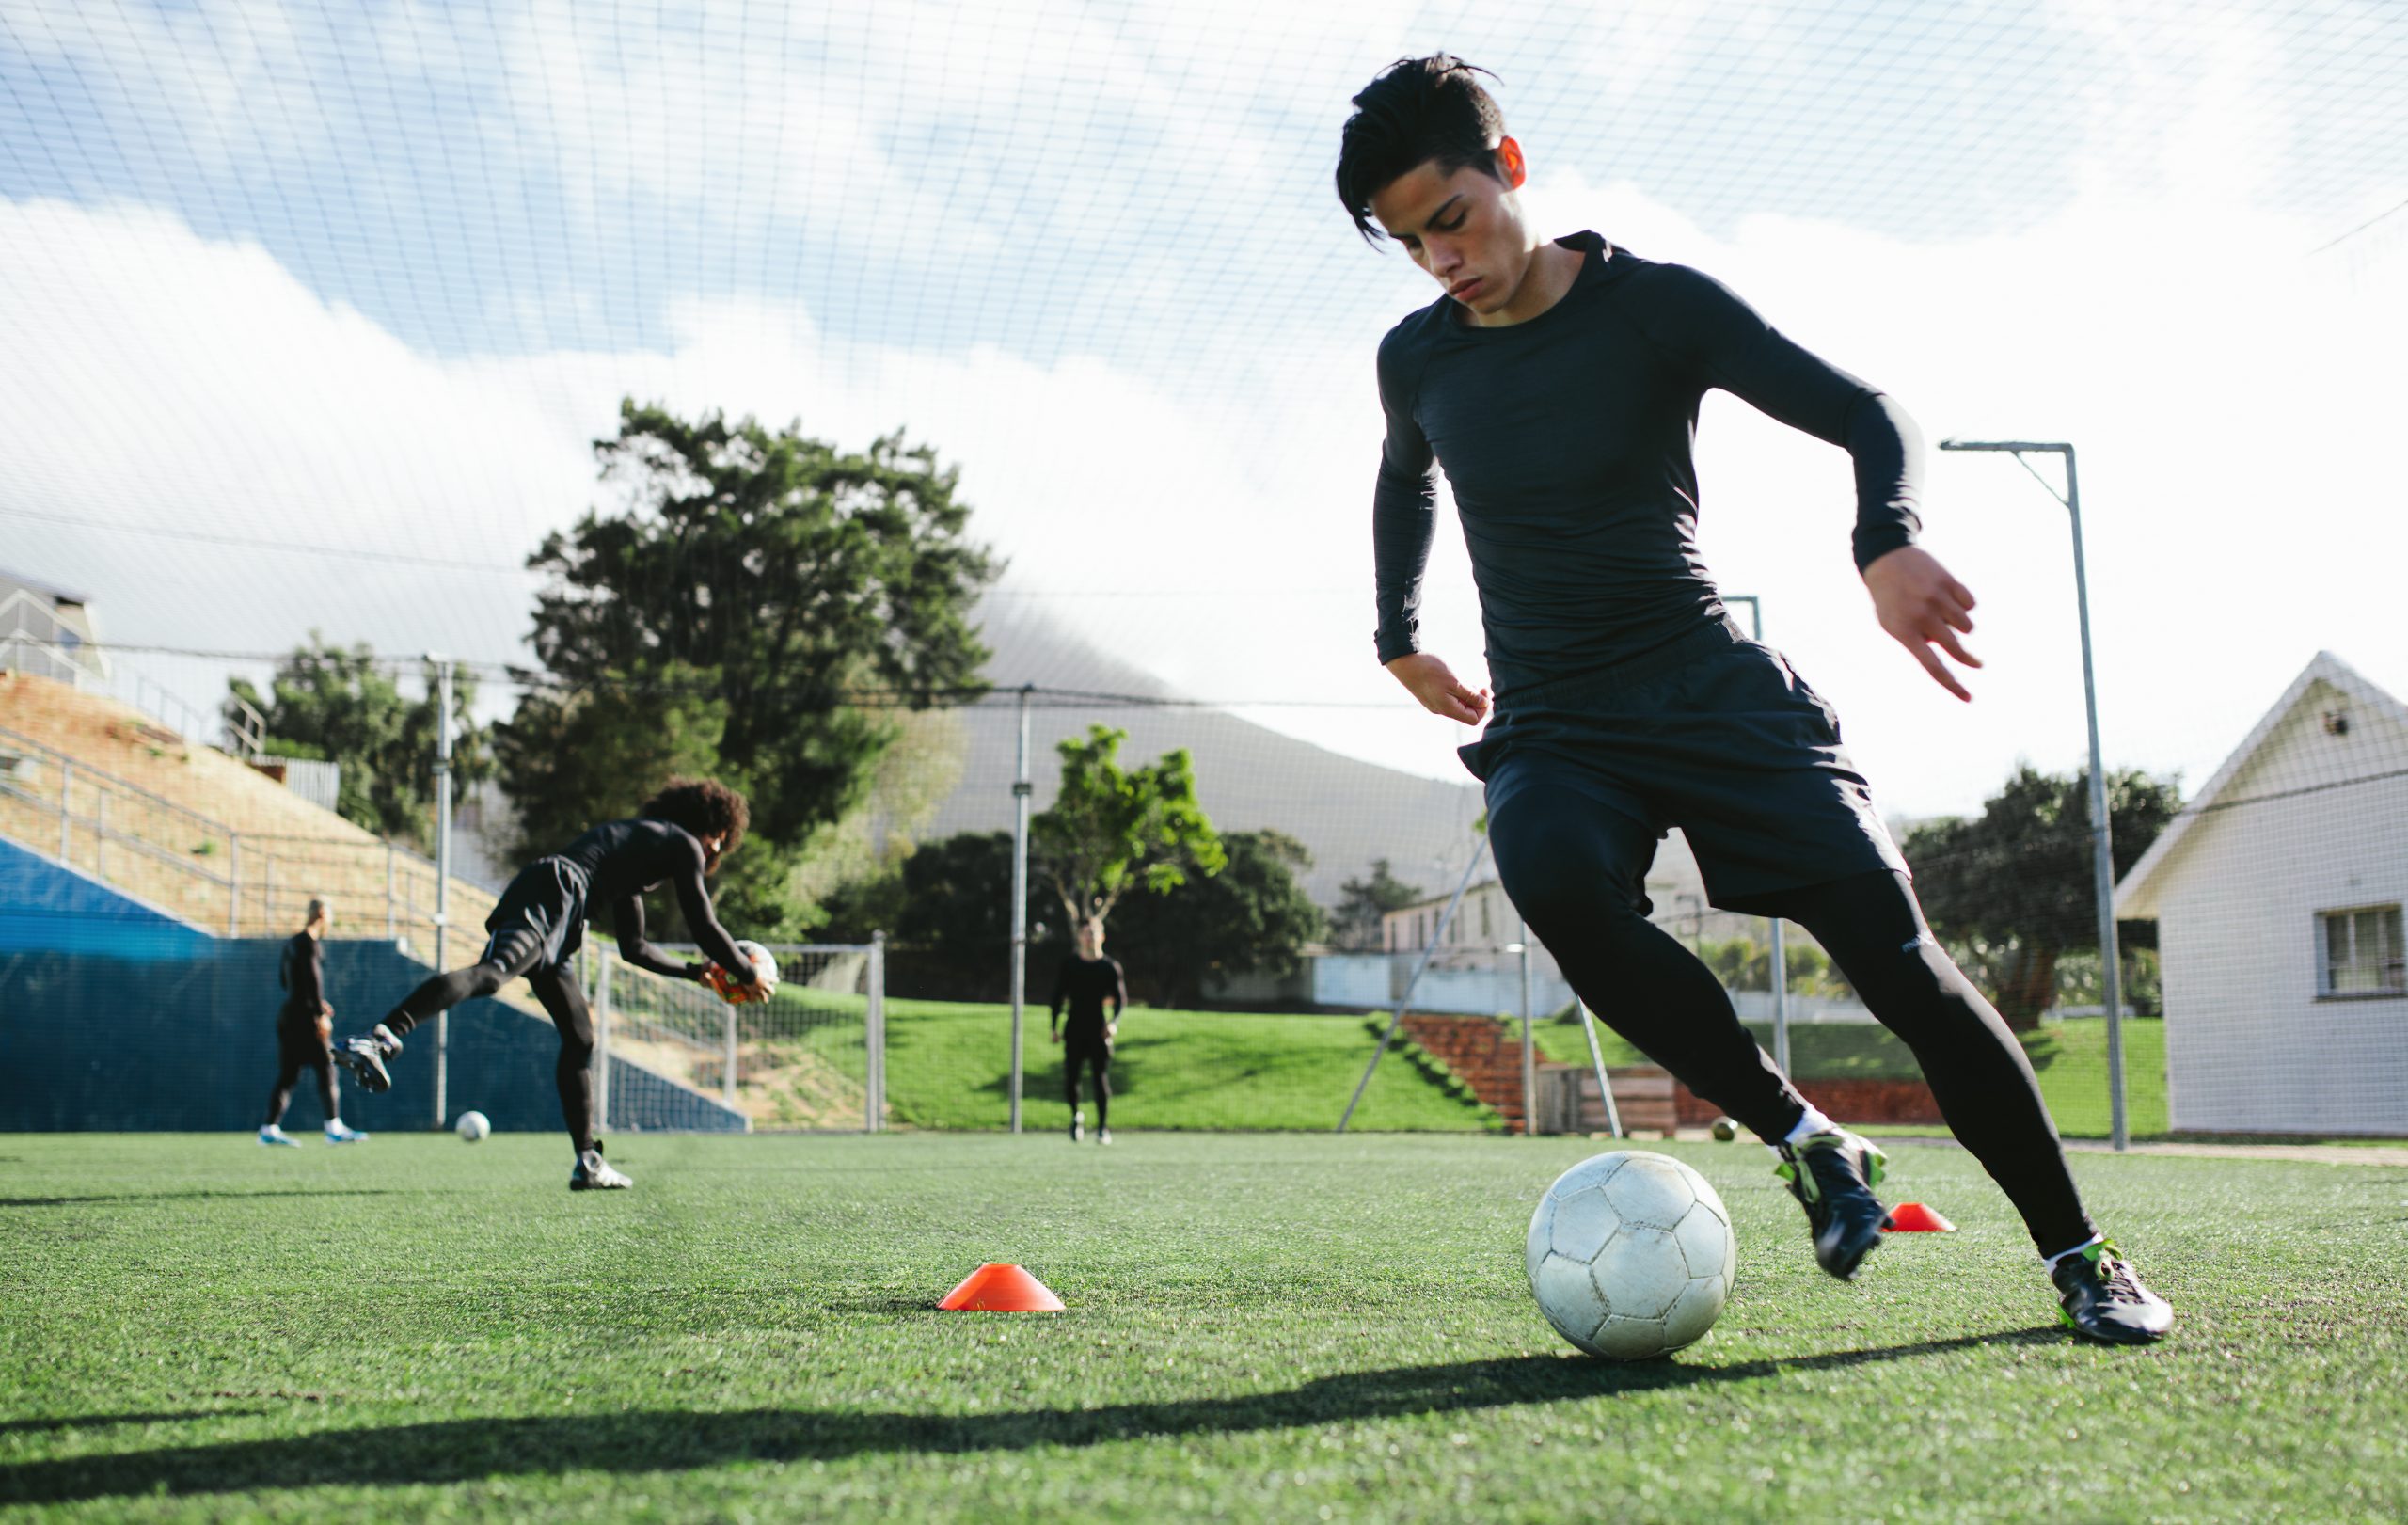 elevate soccer program academy training esp preograms